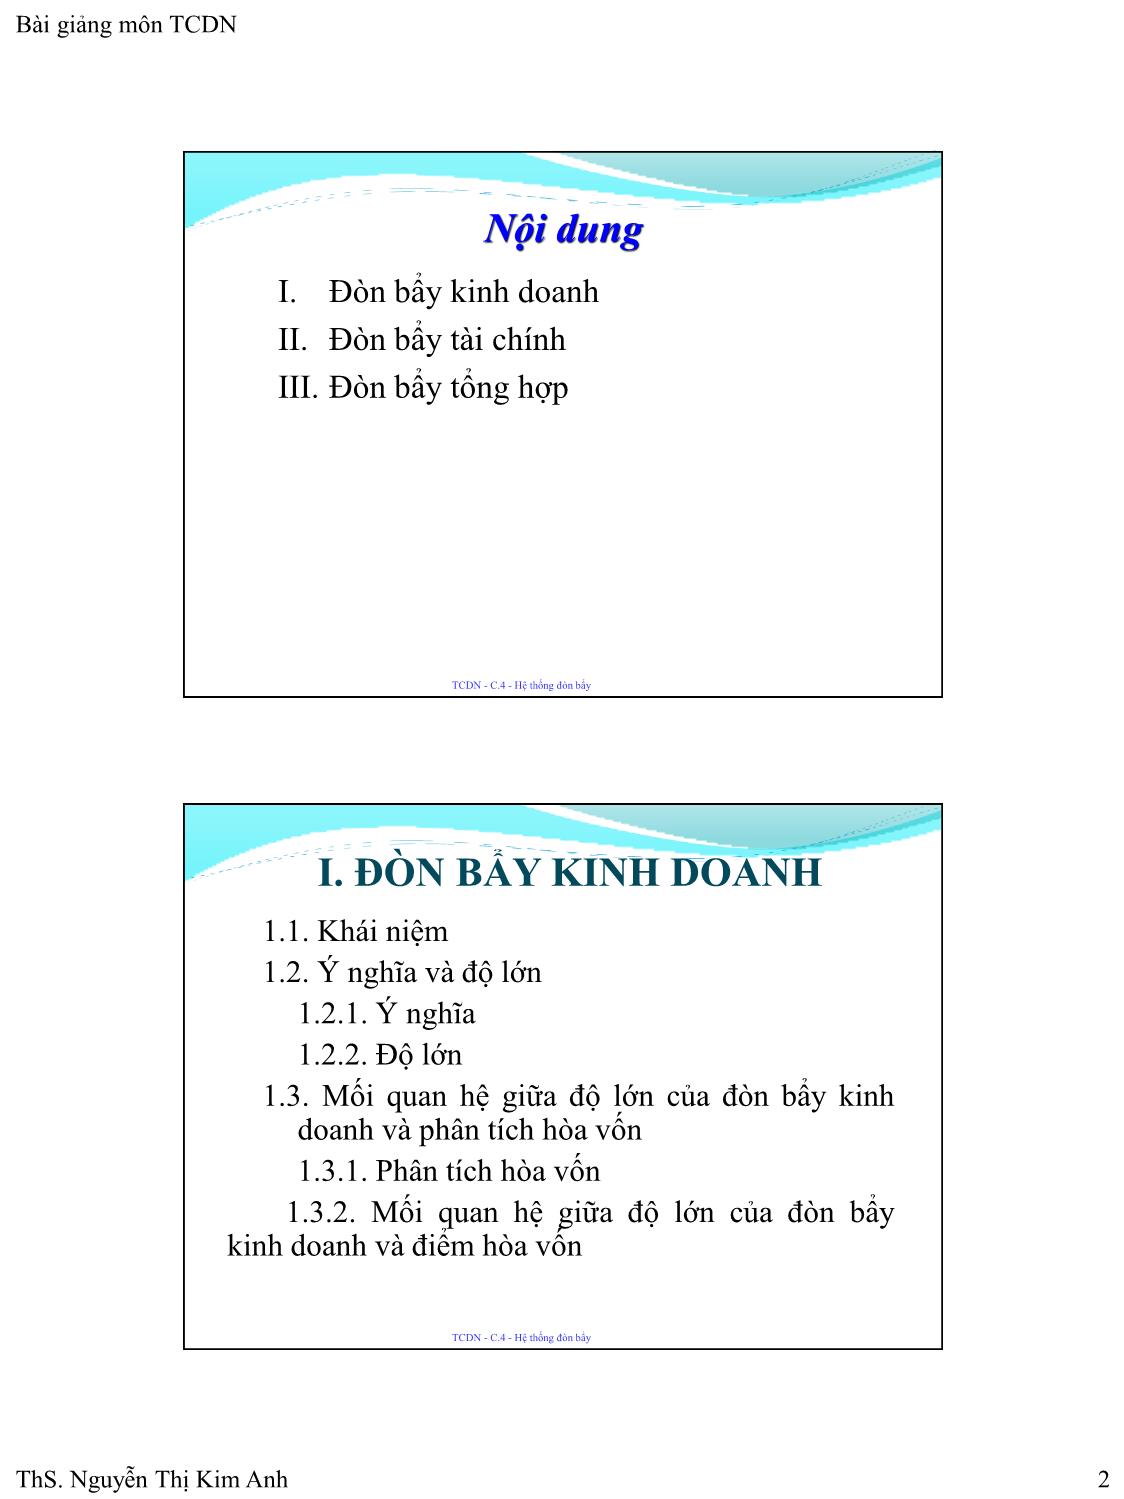 Bài giảng Tài chính doanh nghiệp - Chương 4: Hệ thống đòn bẩy - Nguyễn Thị Kim Anh trang 2